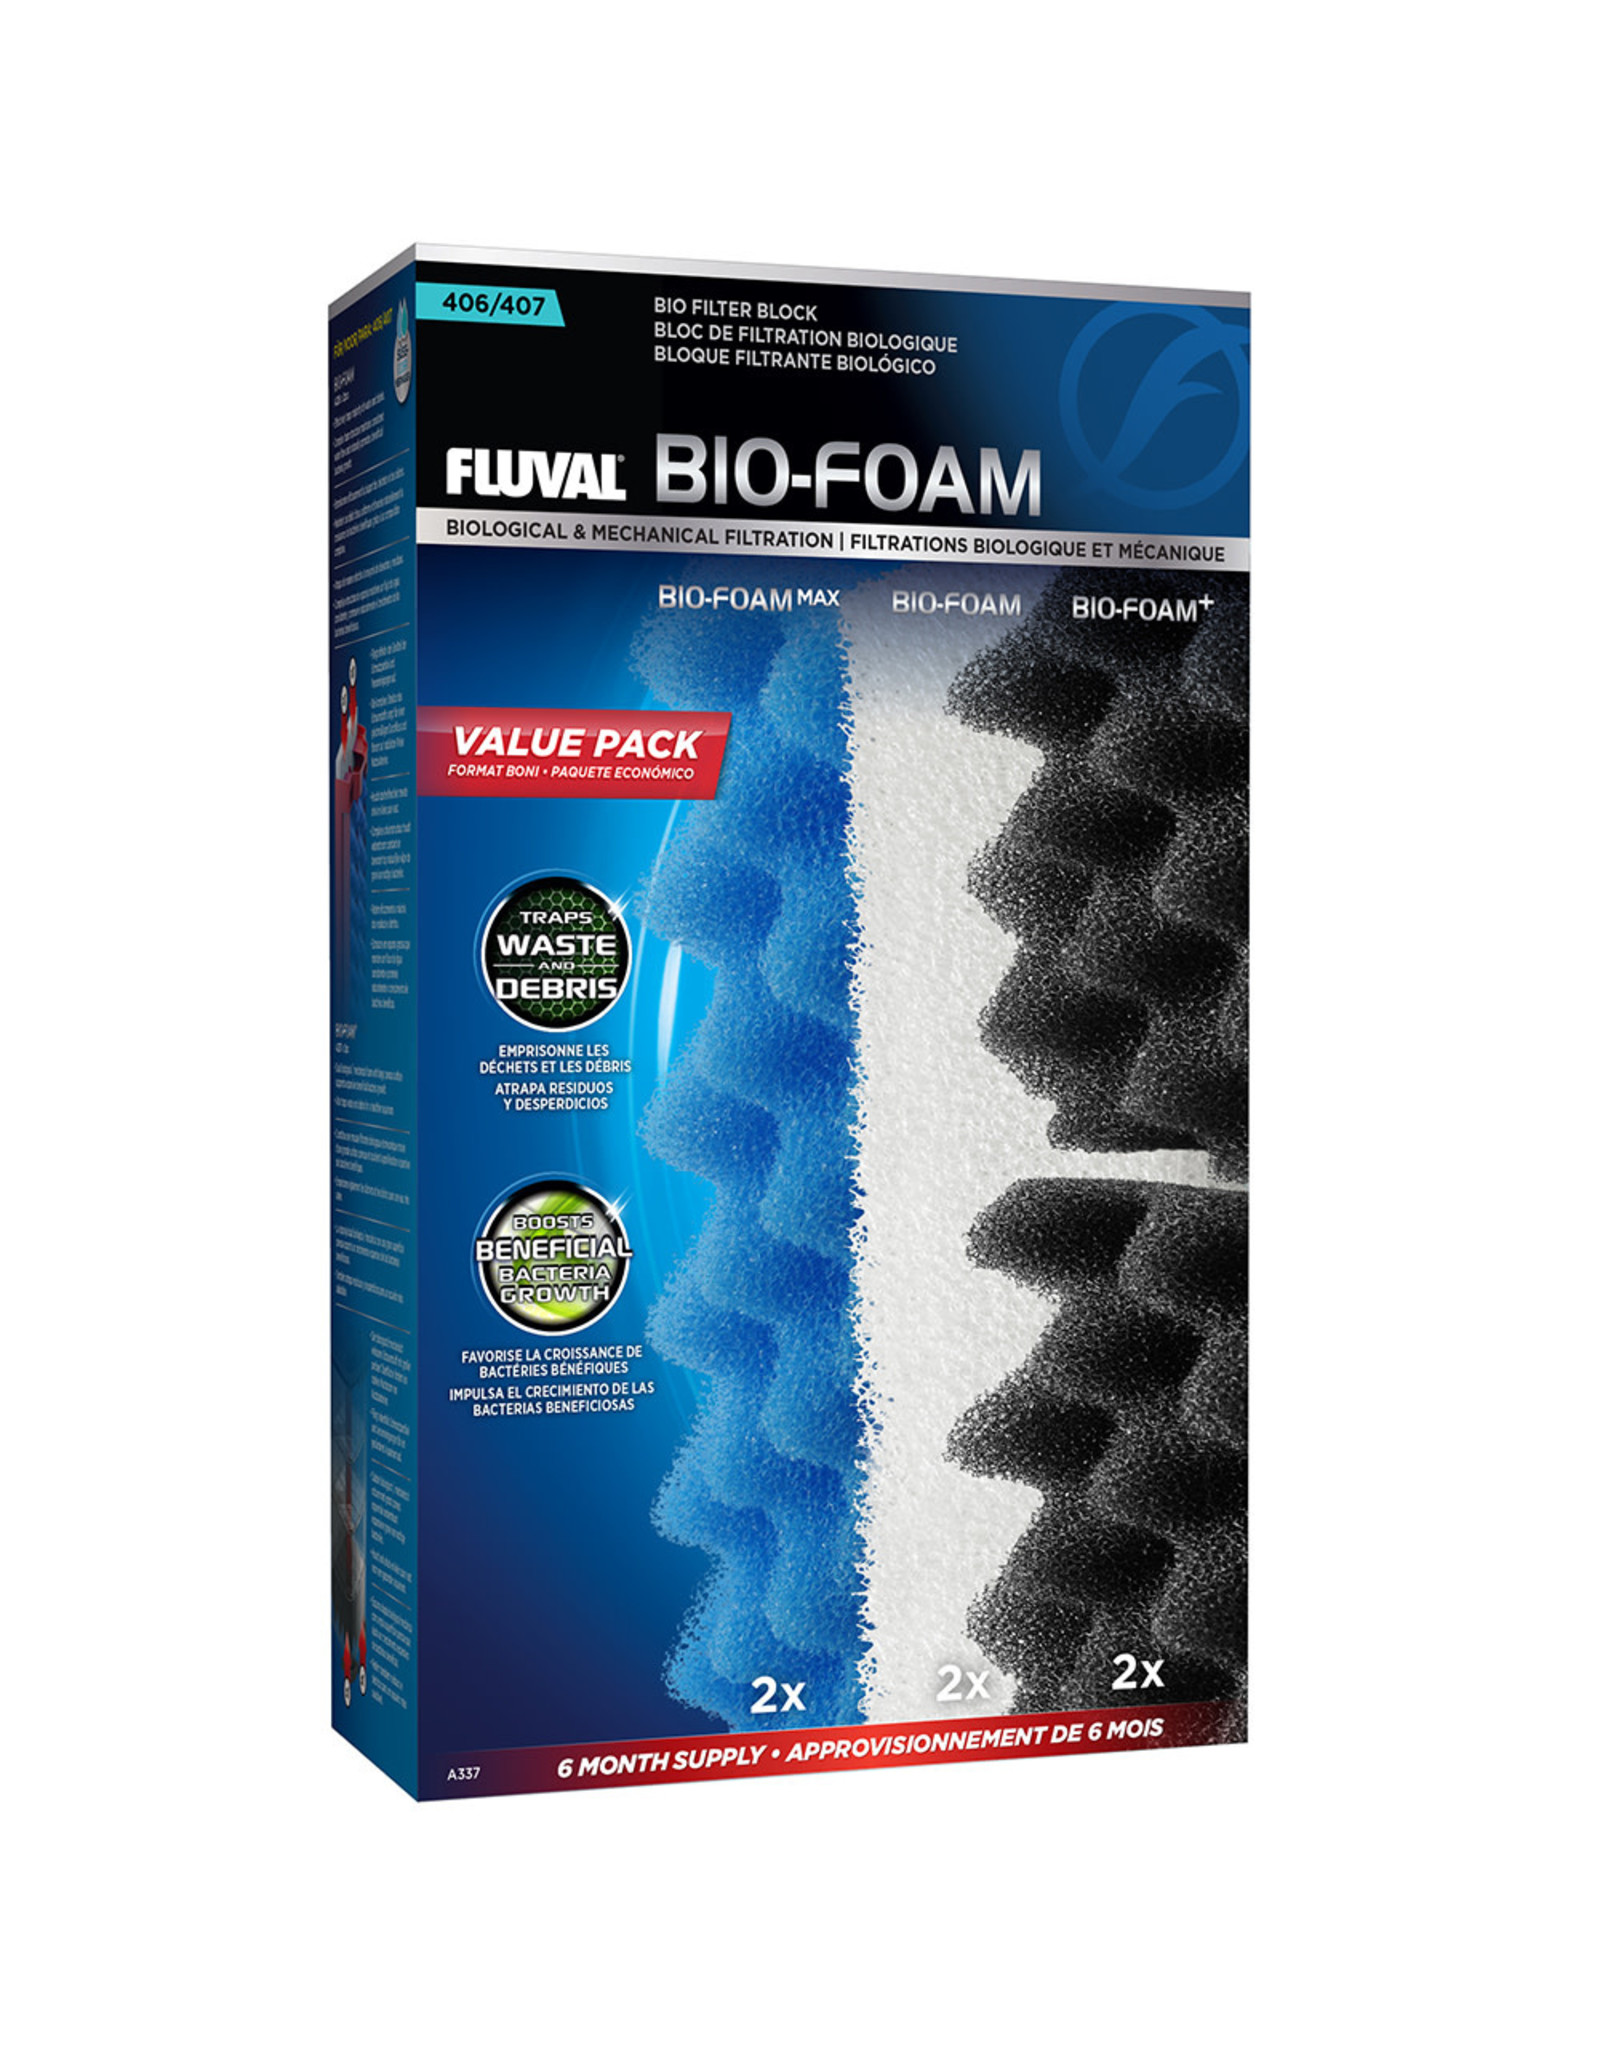 Fluval Fluval 407 Bio-Foam Value Pack